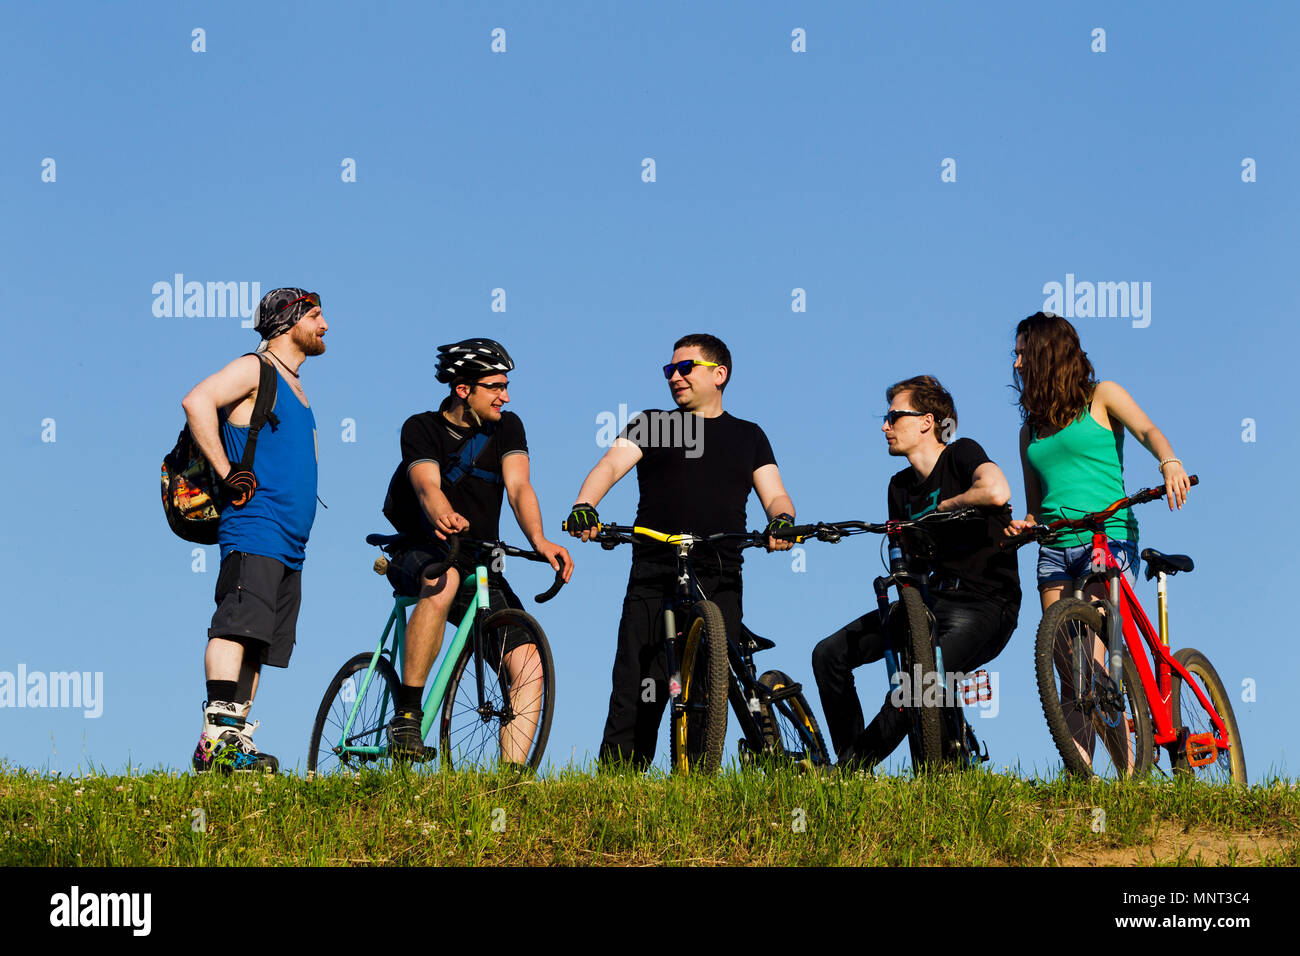 Gruppe von jungen Menschen, ein Mann und ein Mädchen auf einem Fahrrad in der Stadt, beleuchtet durch Sonnenlicht Stockfoto